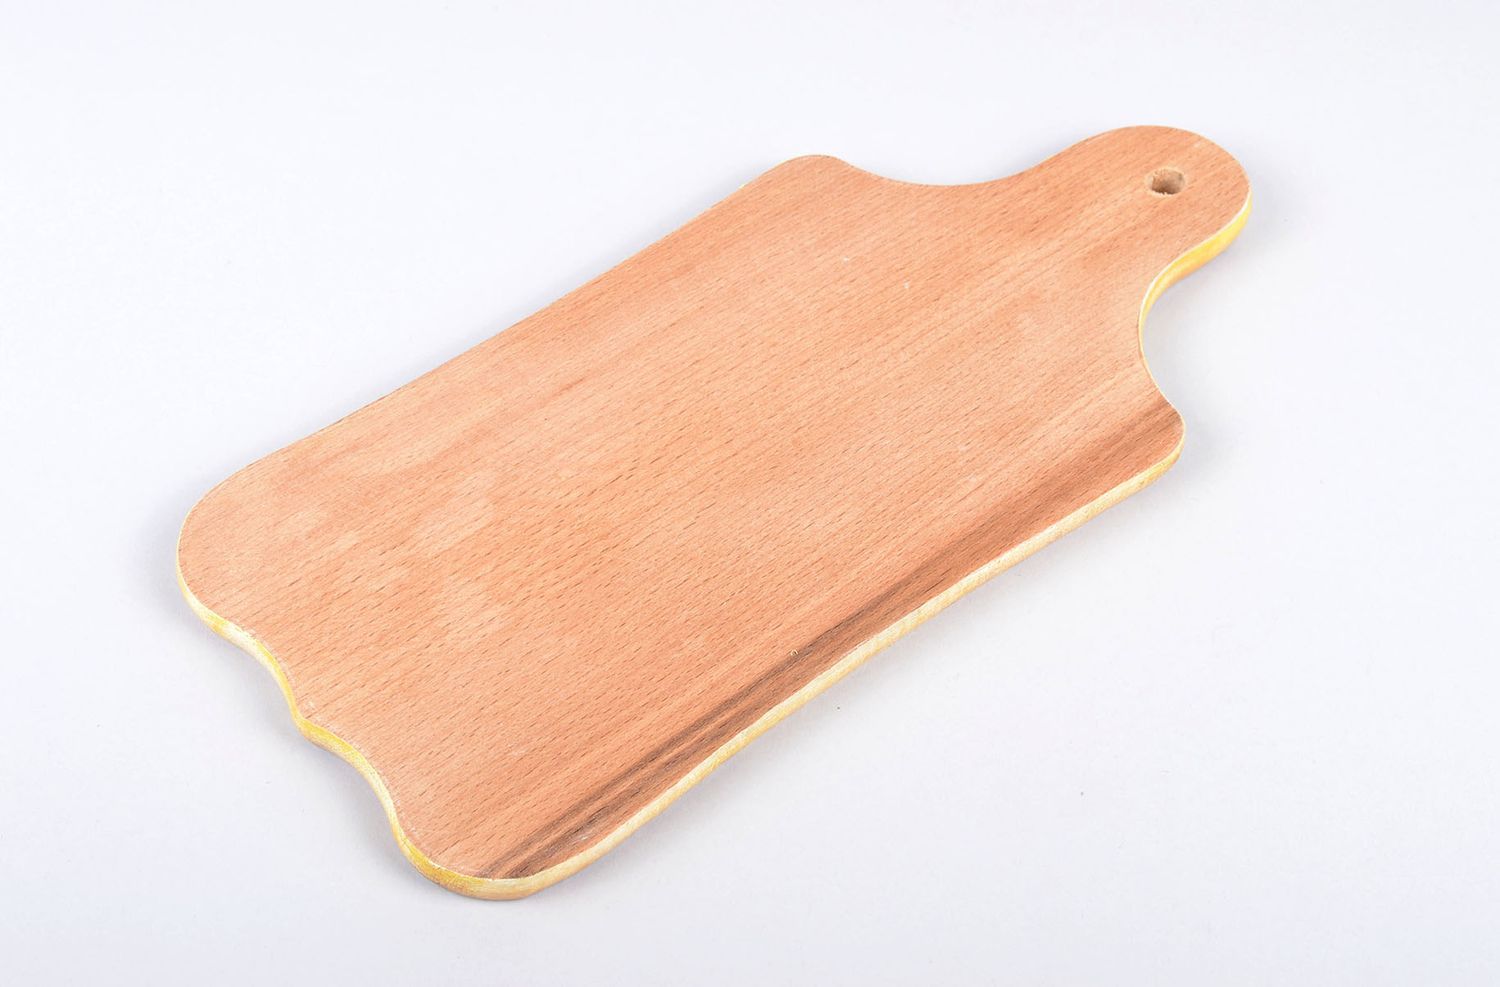 Handmade cutting board wooden chopping board kitchen decor housewarming gifts photo 2